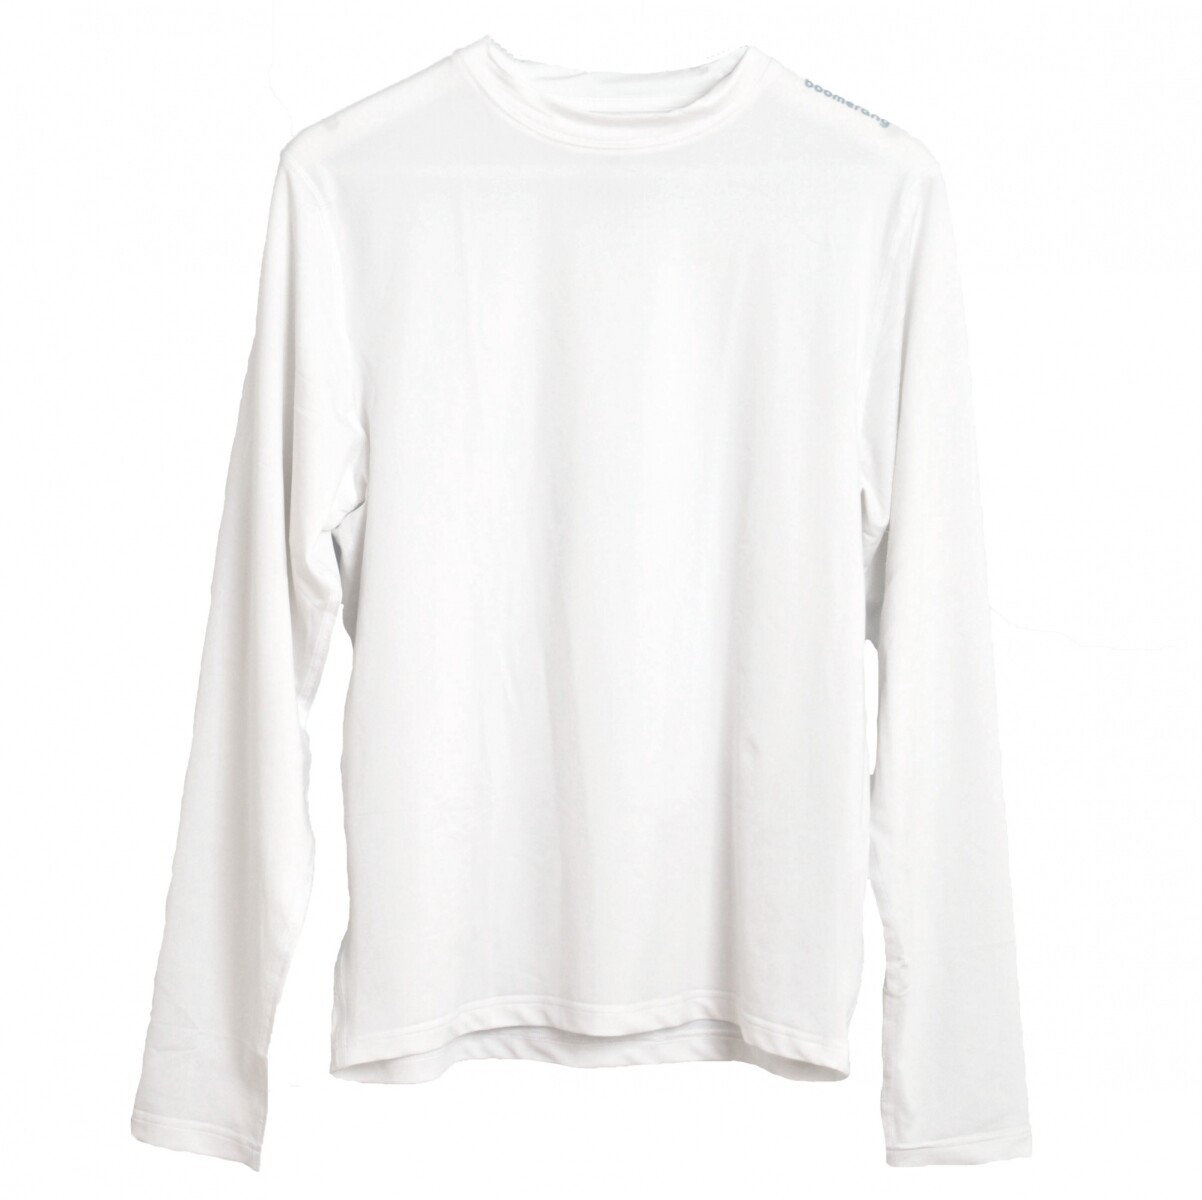 Tshirt Lycra M/L Adulto - Blanco 